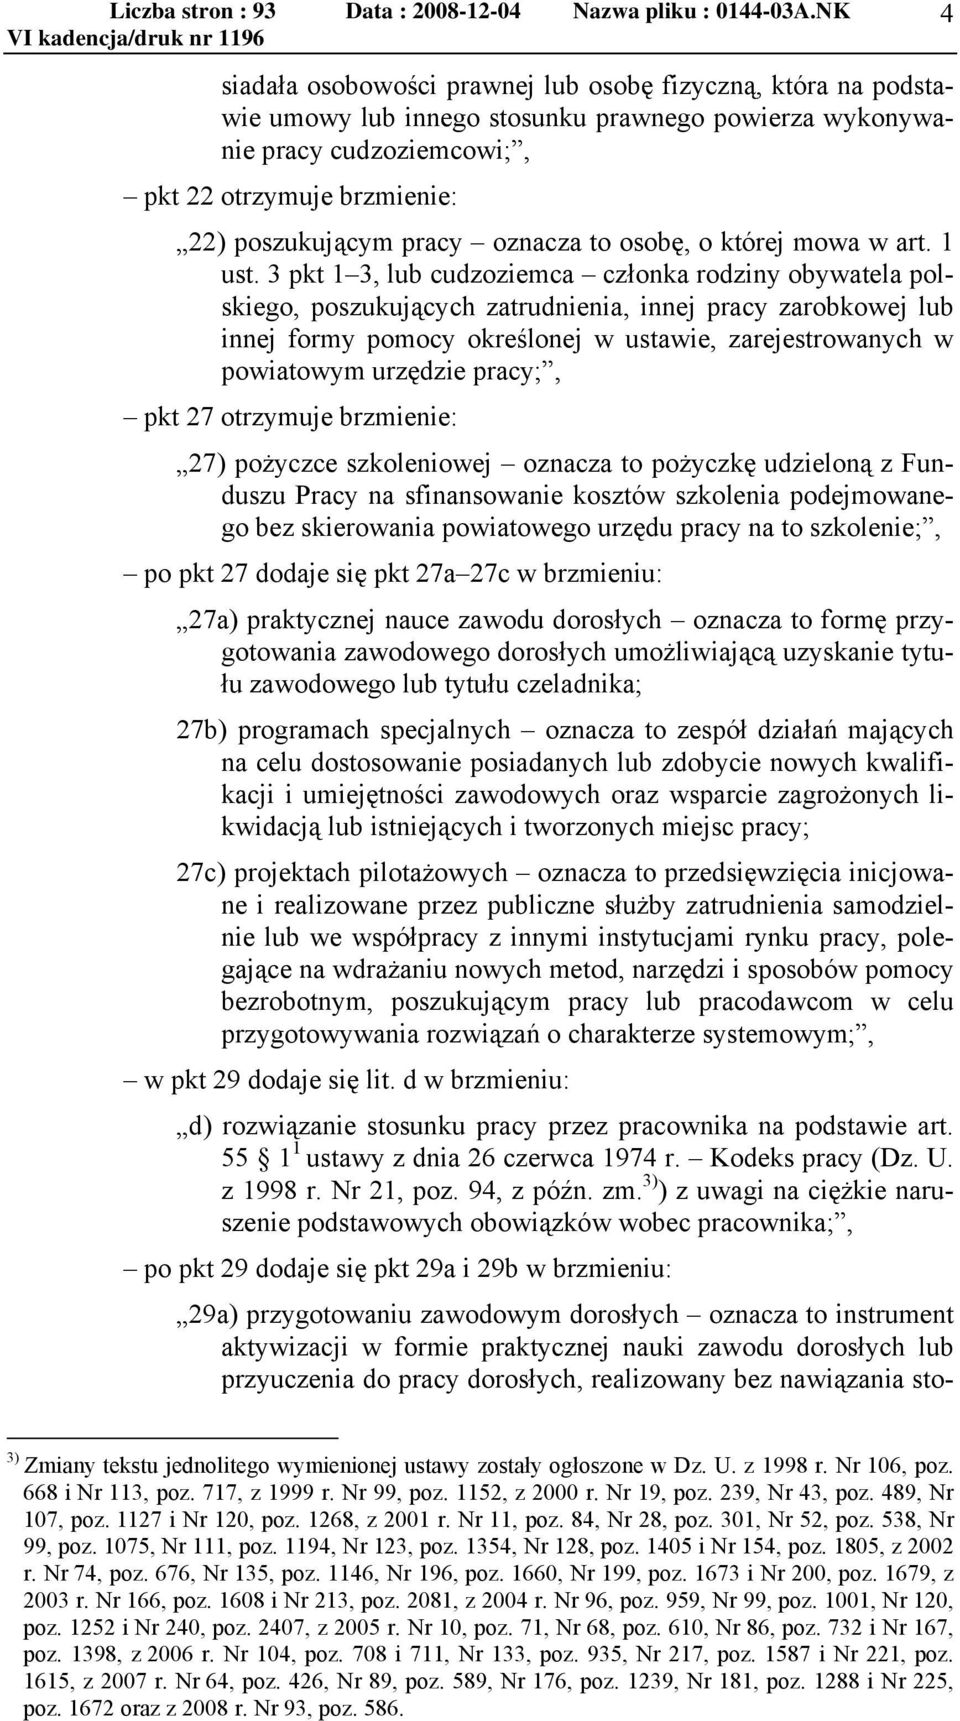 3 pkt 1 3, lub cudzoziemca członka rodziny obywatela polskiego, poszukujących zatrudnienia, innej pracy zarobkowej lub innej formy pomocy określonej w ustawie, zarejestrowanych w powiatowym urzędzie